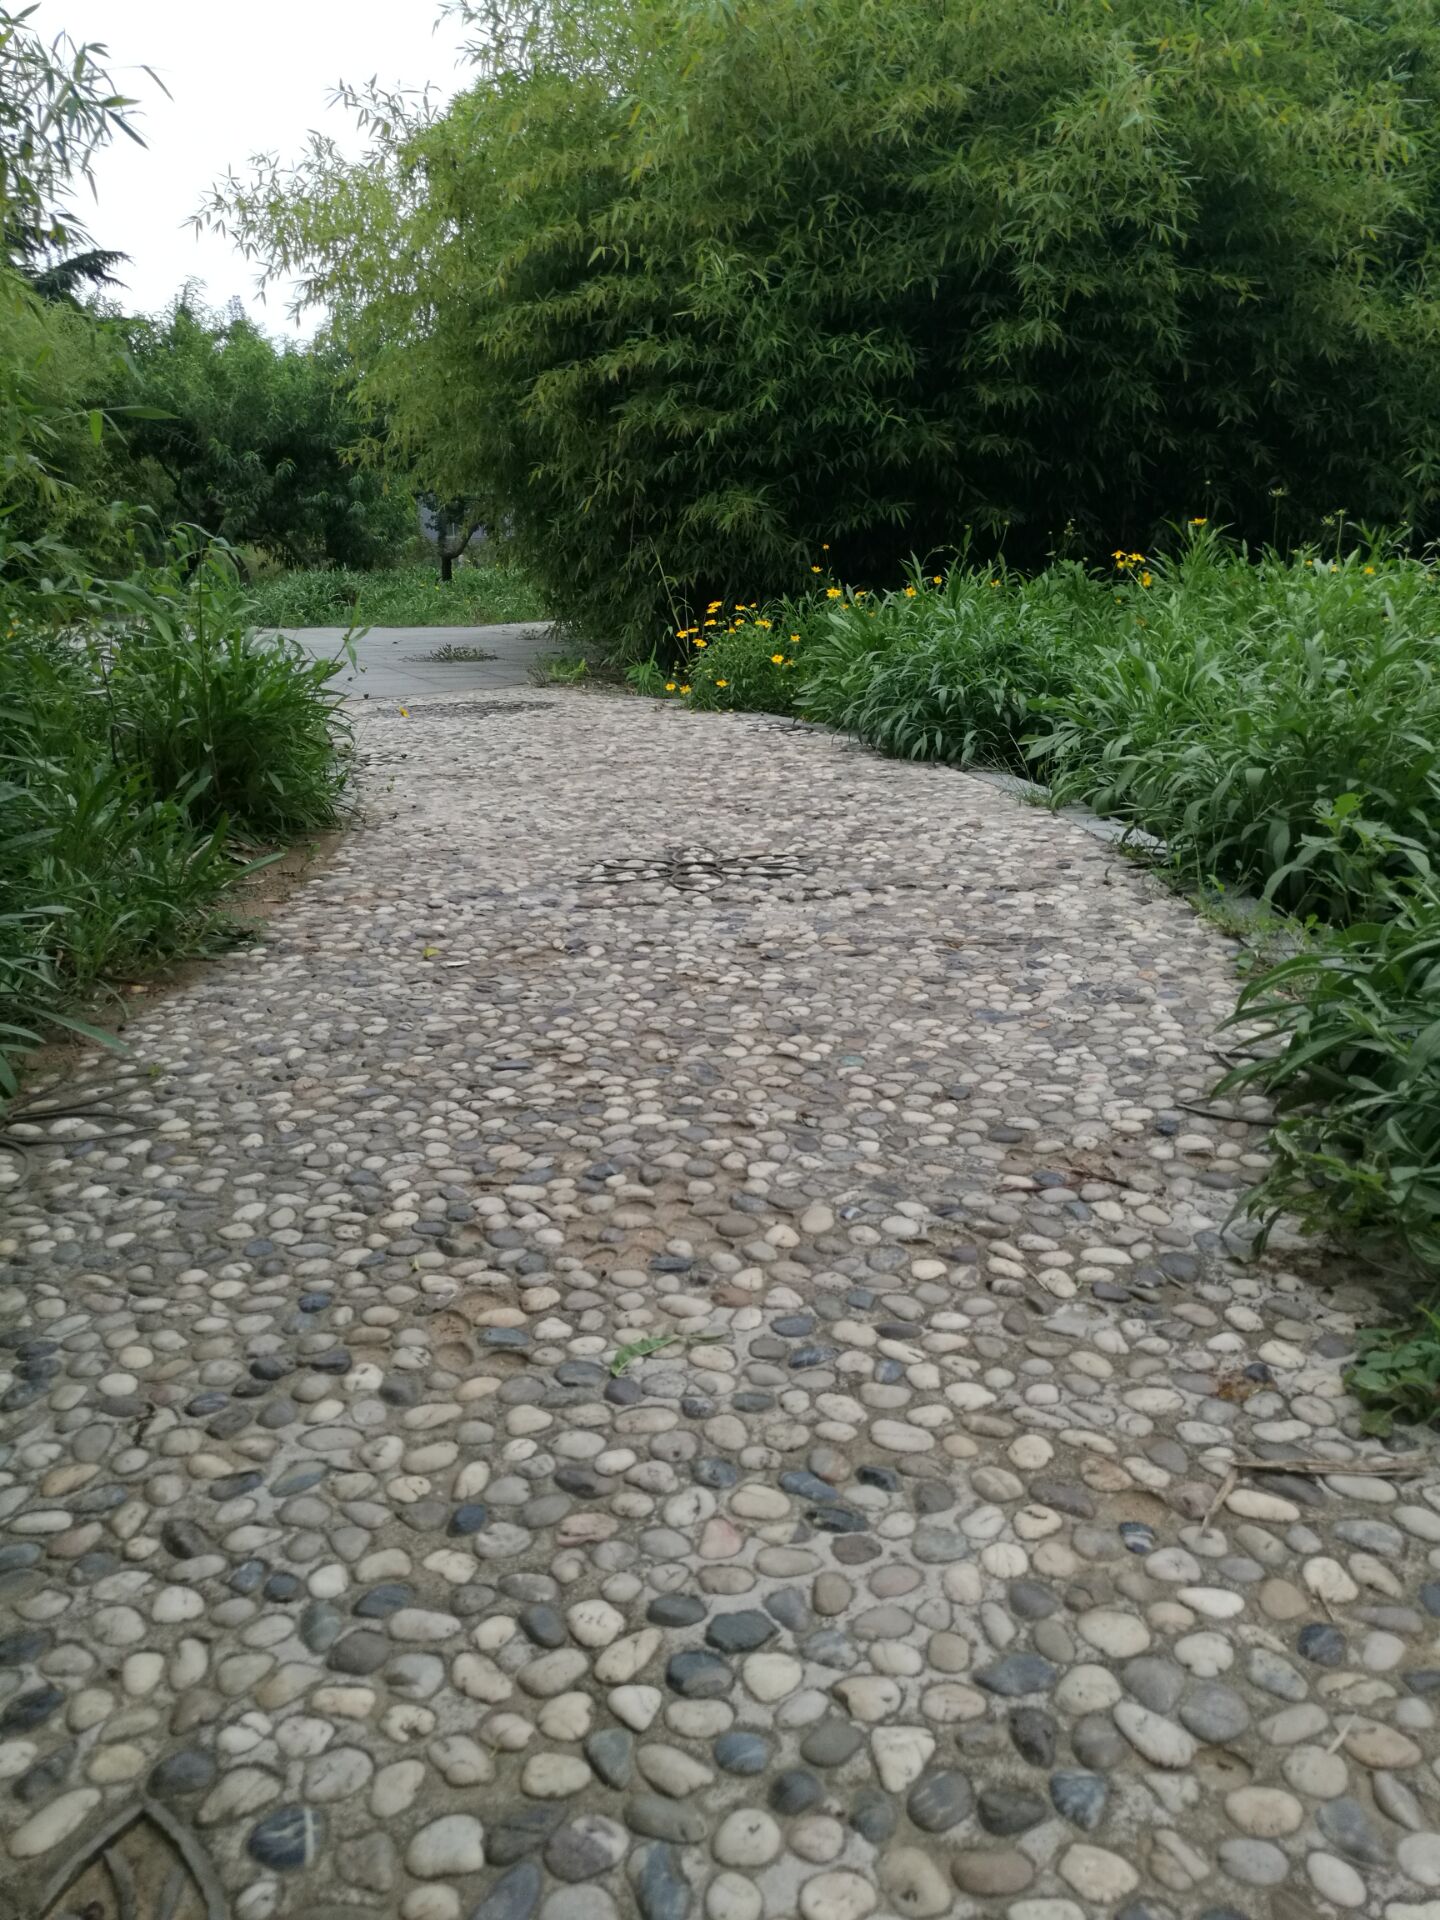 注:临沂书法广场公园的鹅卵石路面的鹅卵石,是由临沂鹅卵石生产基地